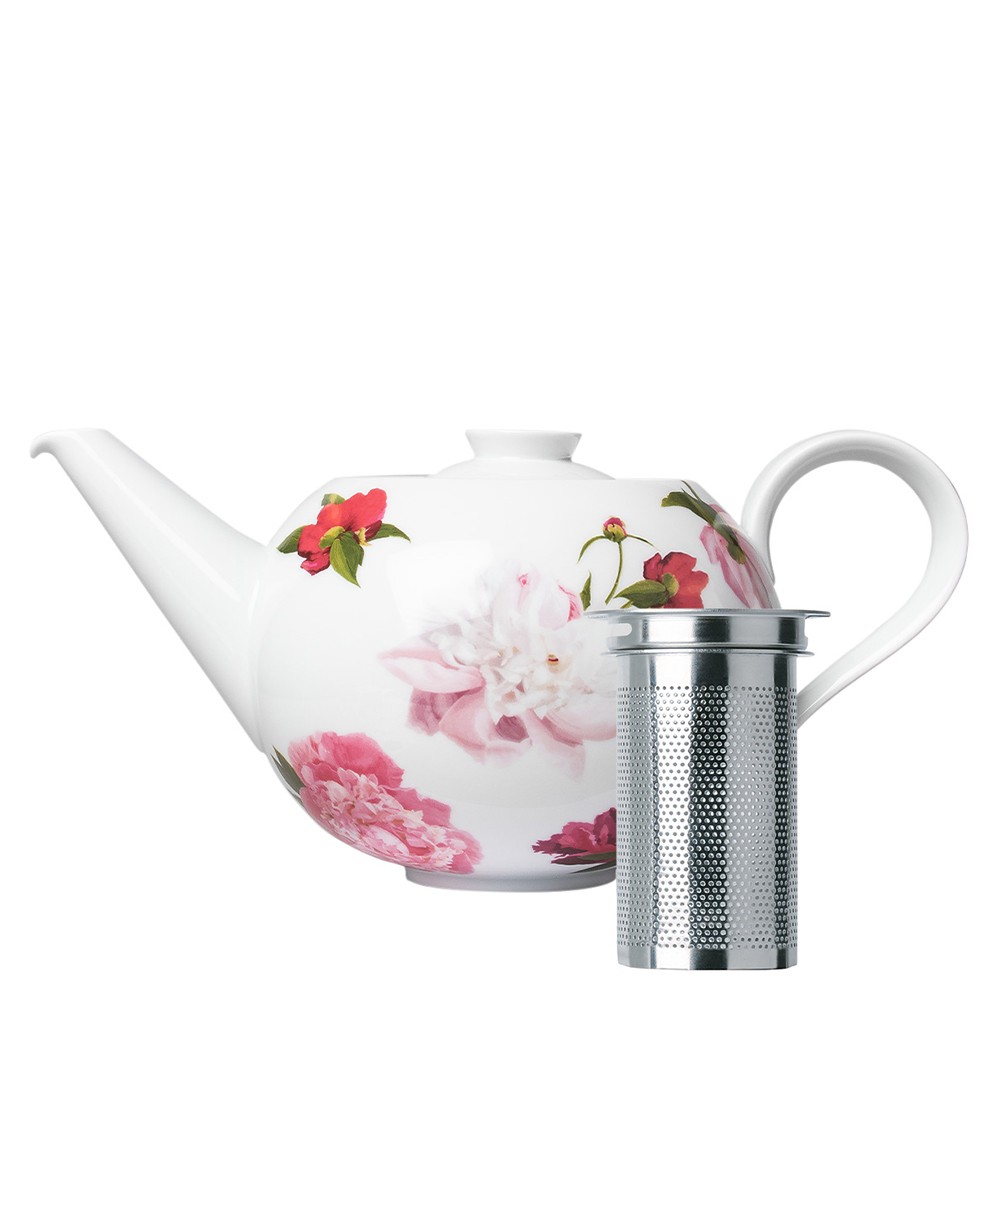 Produktbild, das die Teekanne mit Edelstahlsieb der Paraiso-Serie von Sieger by Fürstenberg zeigt